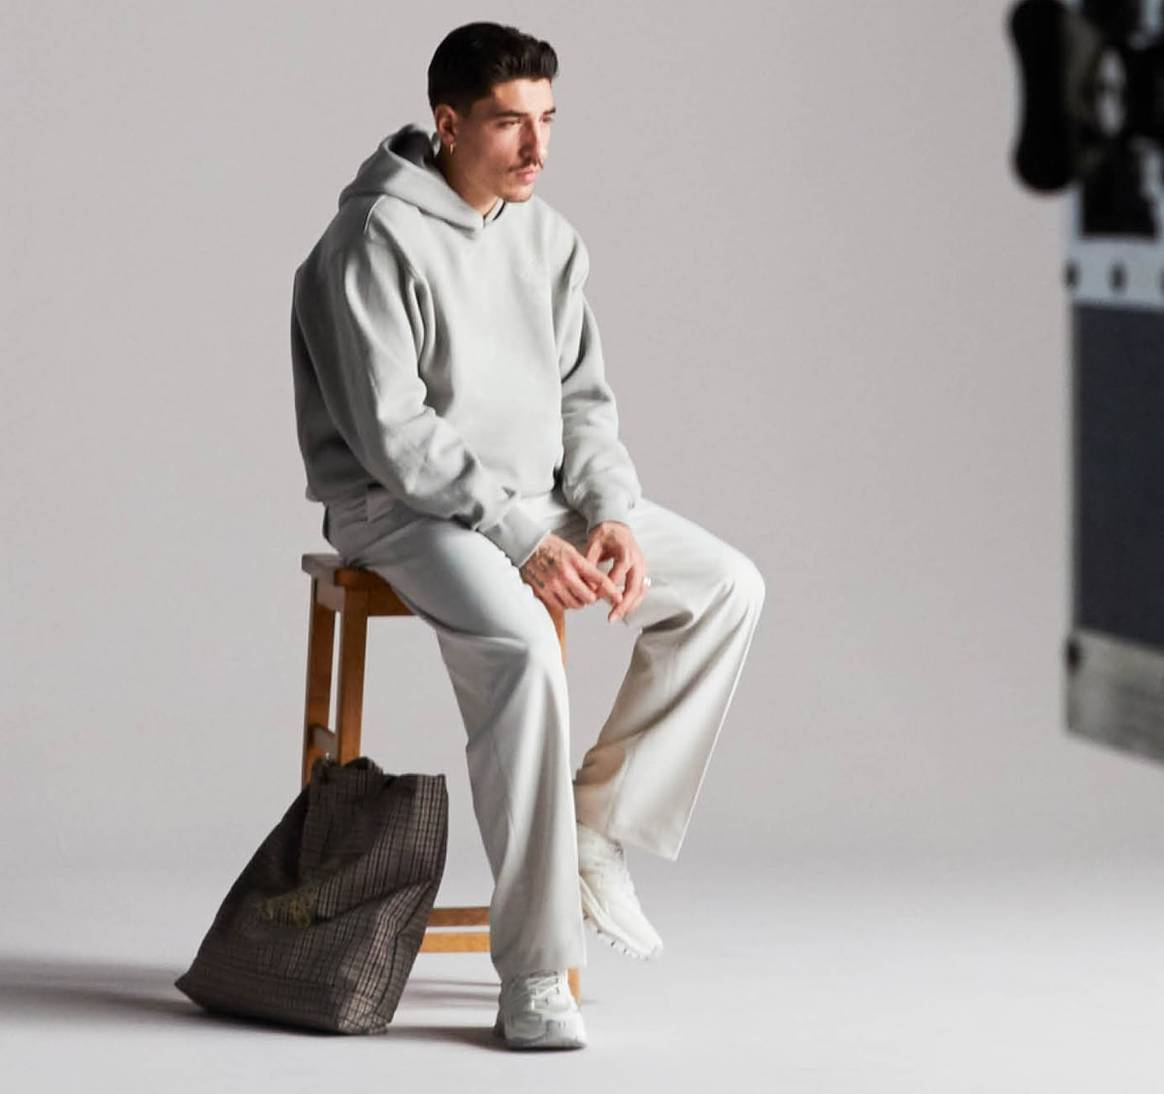 H&M ficha a Héctor Bellerín como diseñador de una nueva colección “íntegramente” sostenible